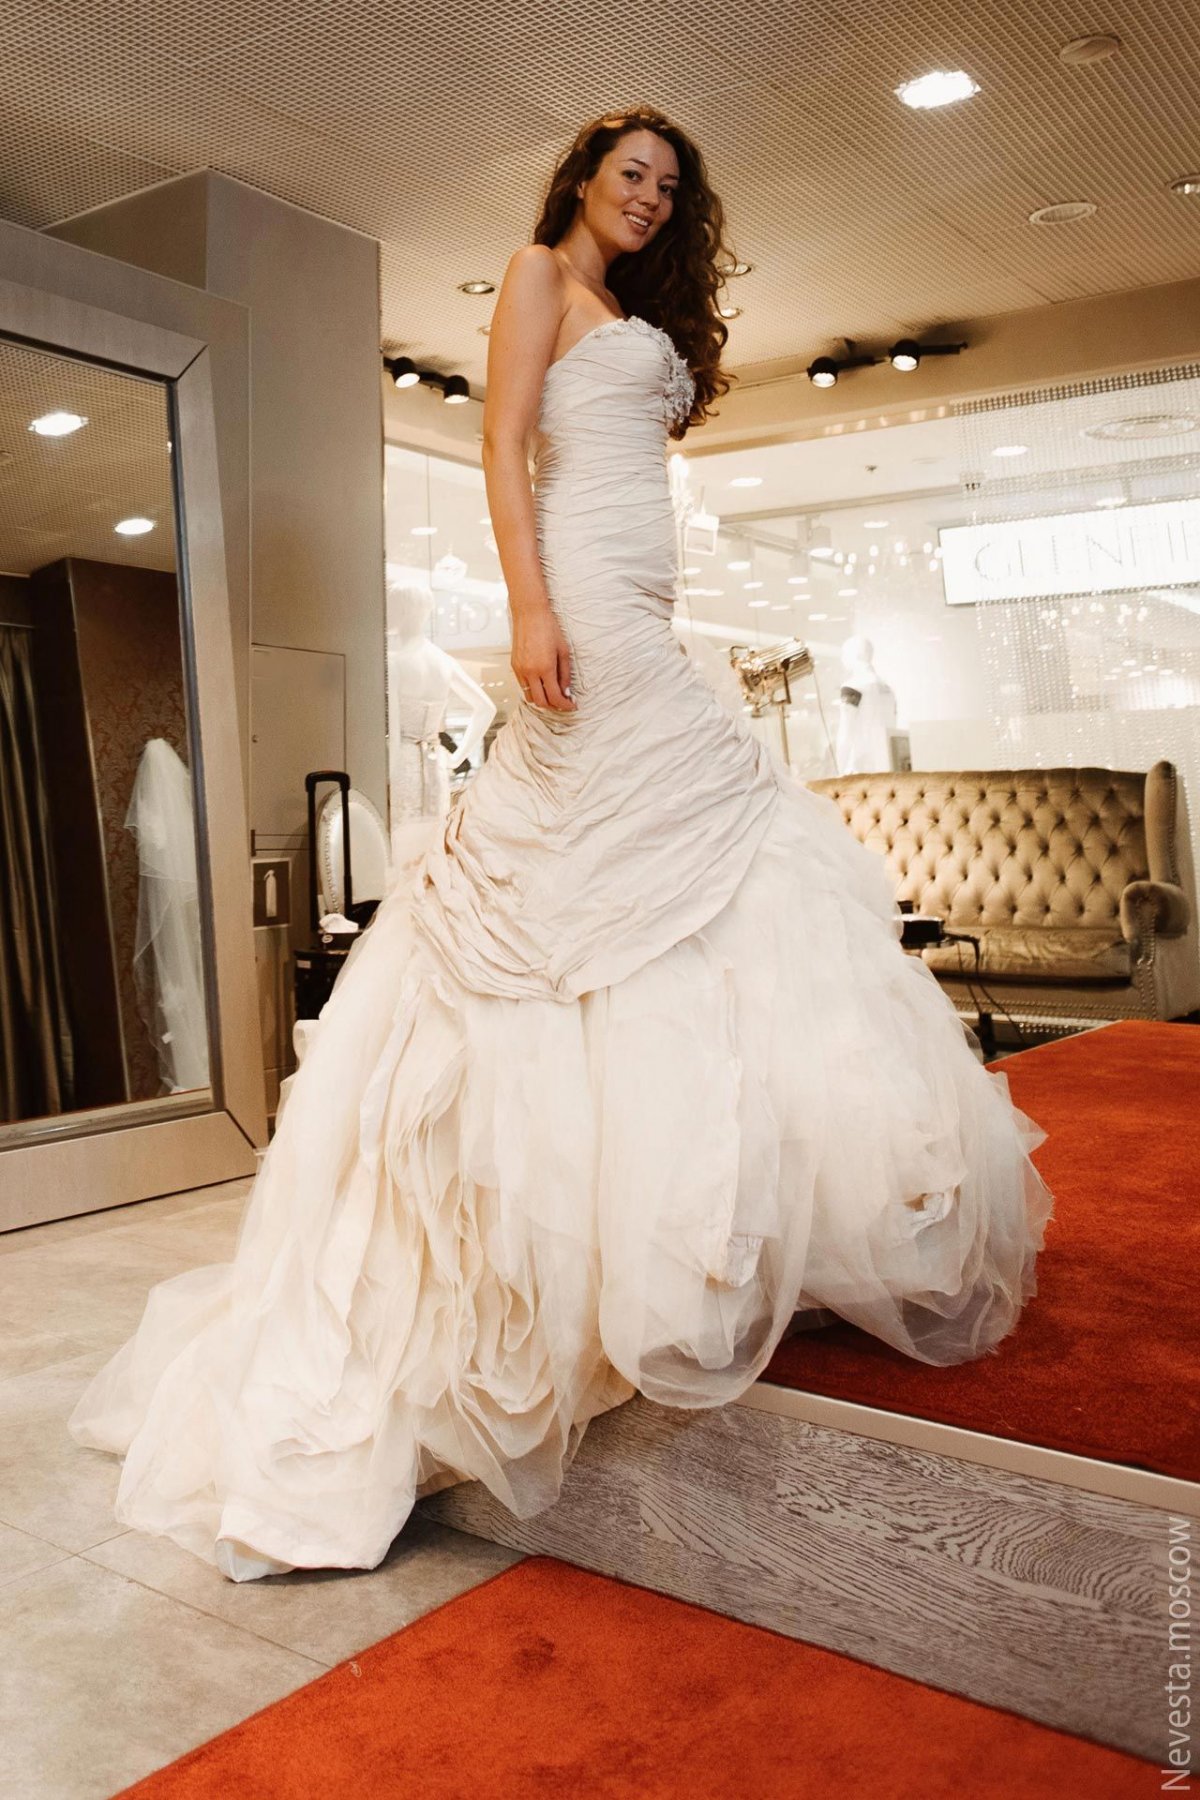 Рената Байкова примеряет свадебное платье фото 6